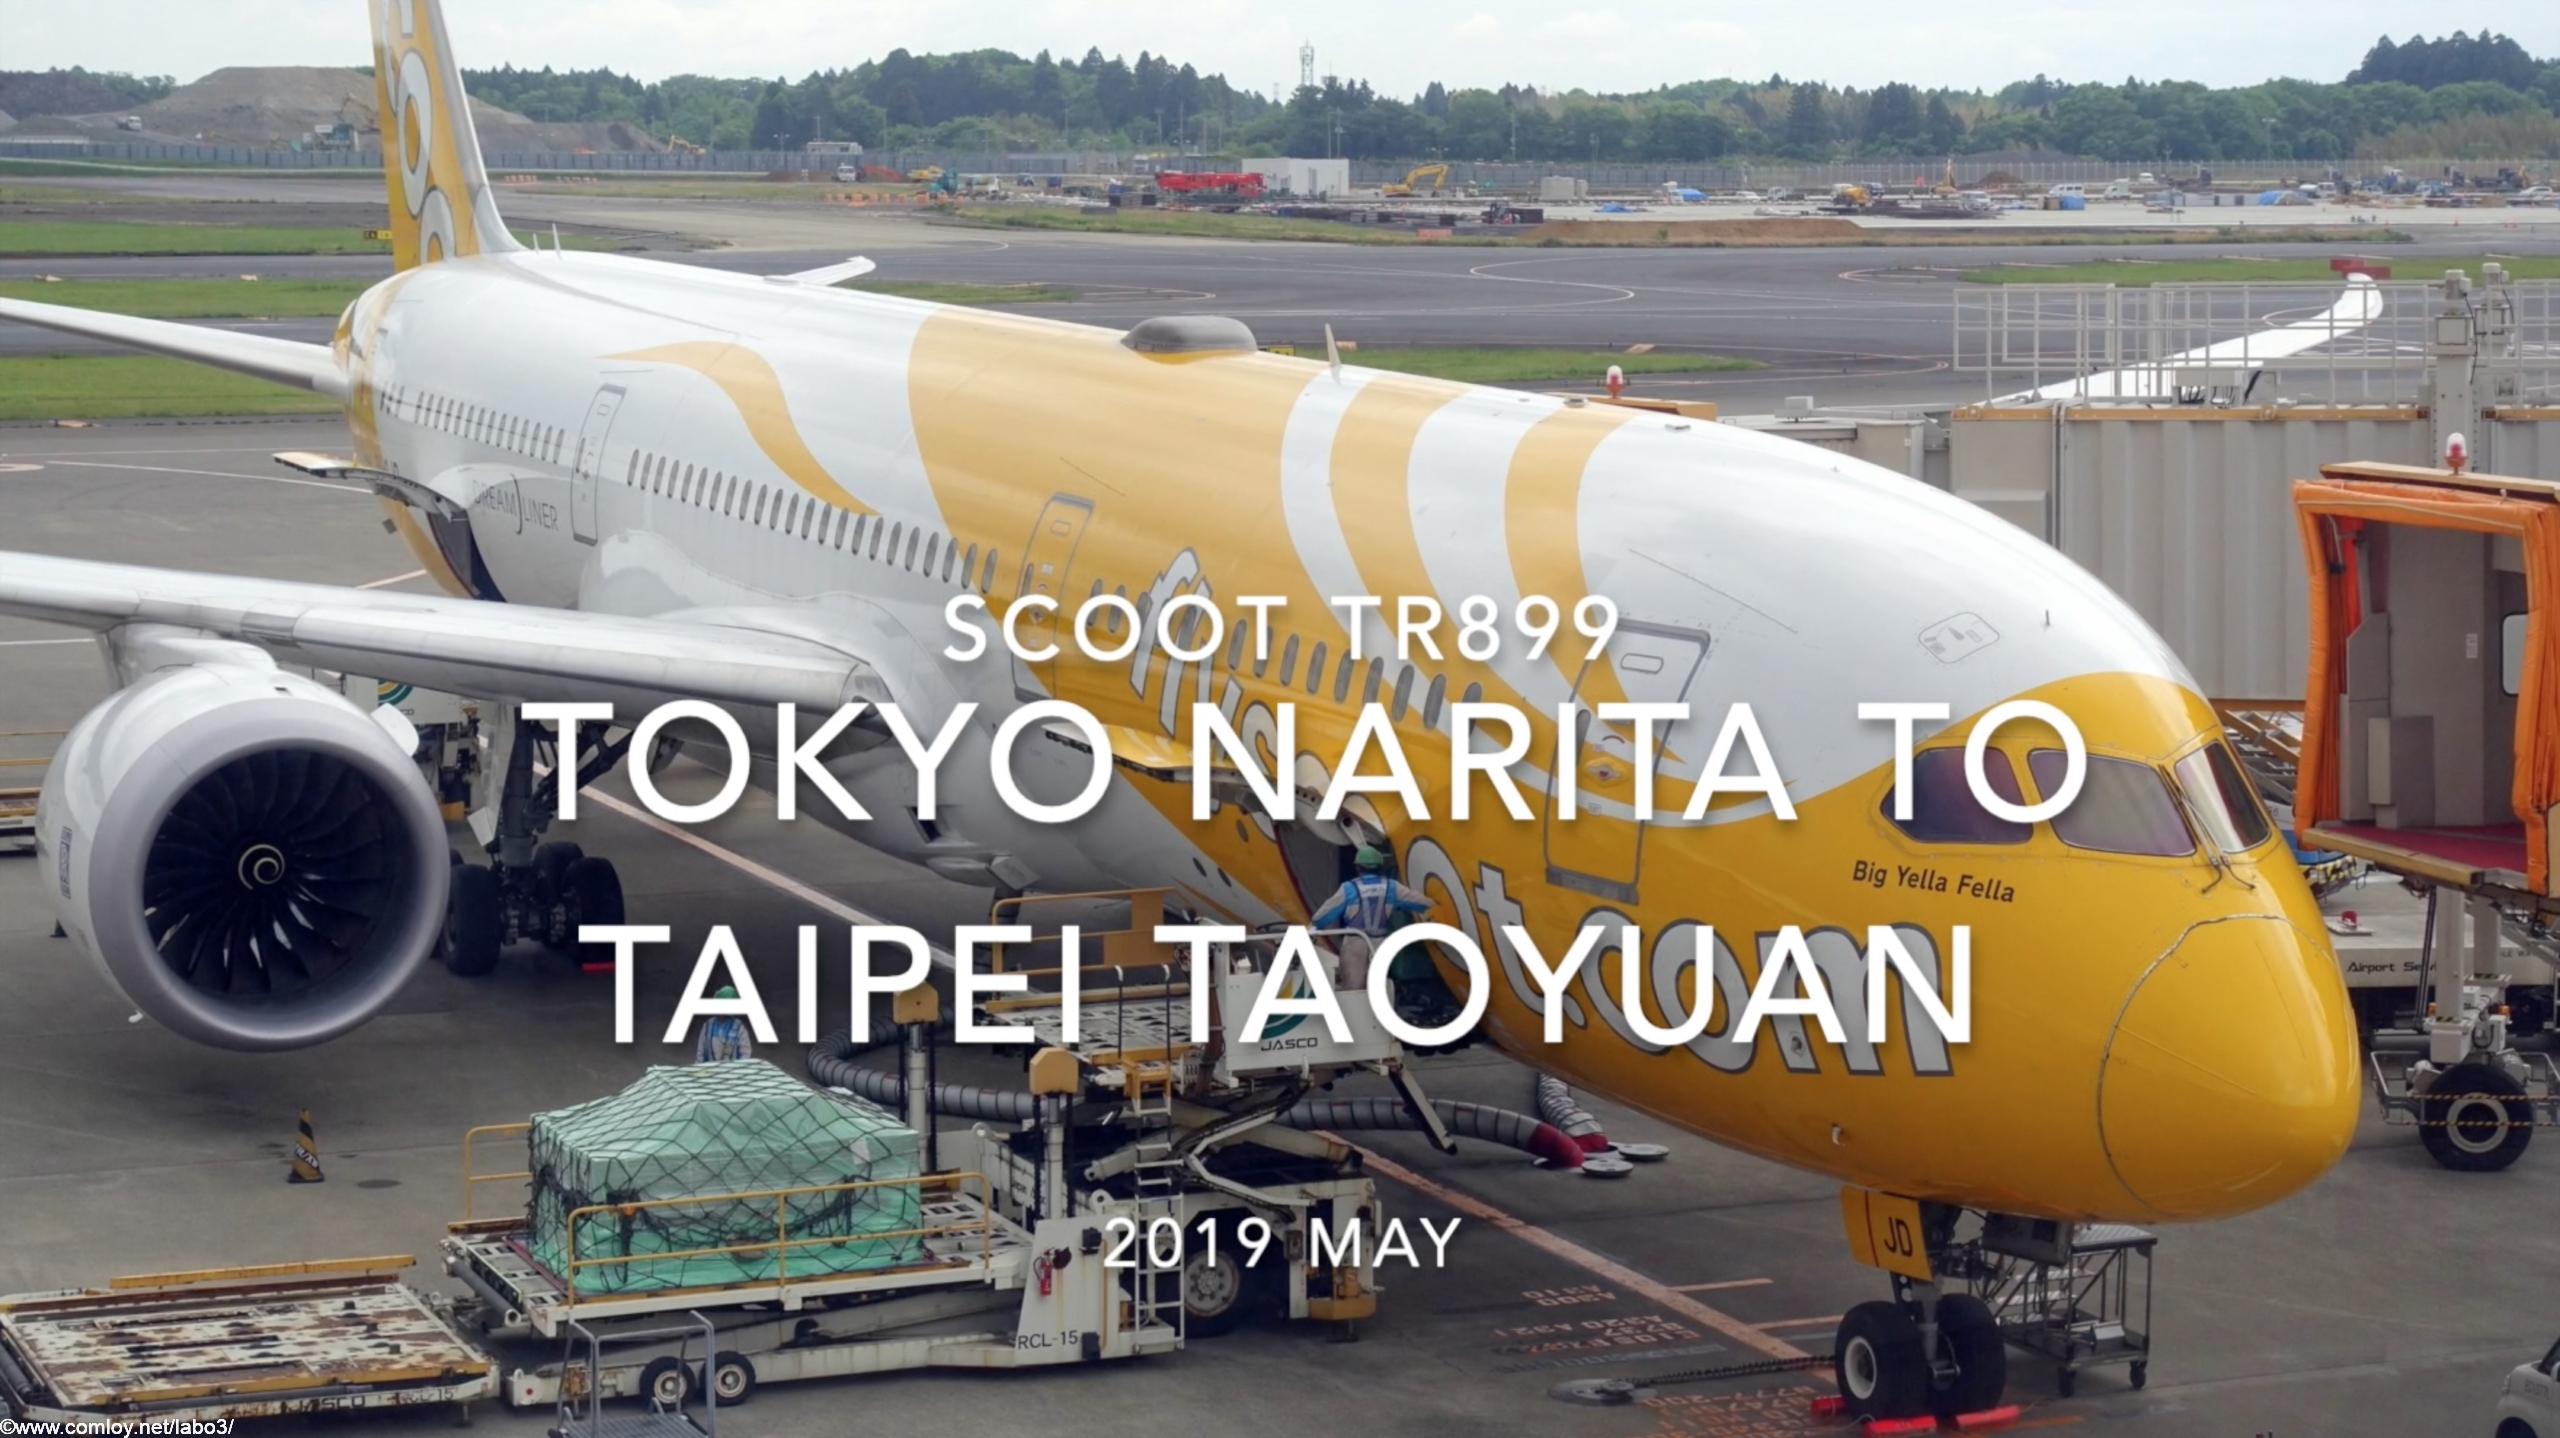 【Flight Report】SCOOT TR899 TOKYO NARITA TO TAIPEI Taoyuan 2019 MAY スクート 成田 - 台北(桃園) 搭乗記